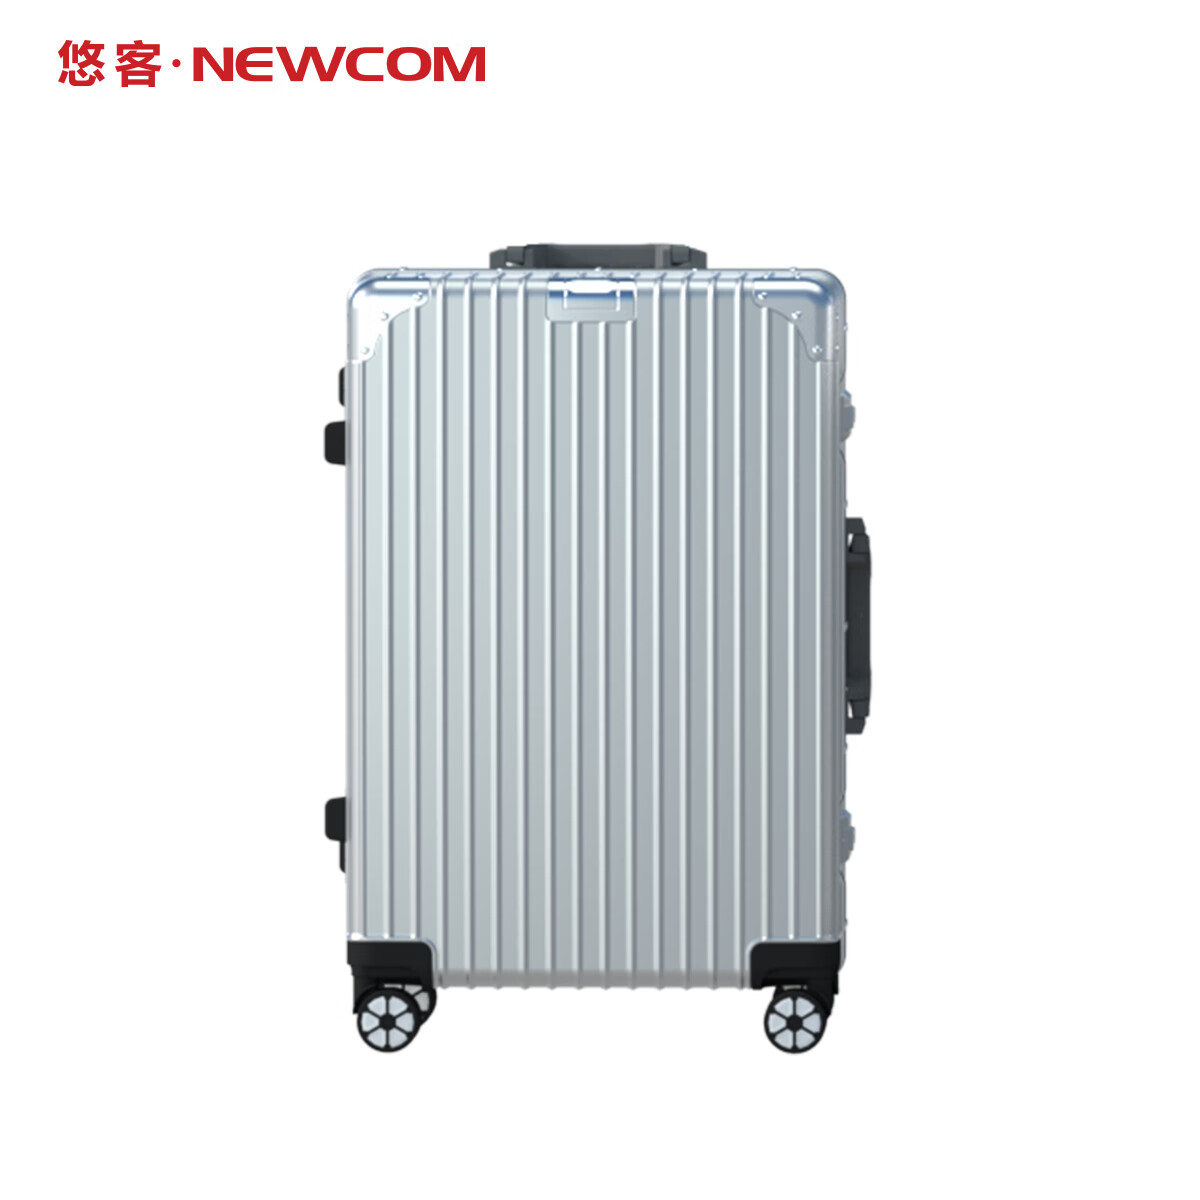 NEWCOM悠客行李箱铝框大容量密码箱学生男女通用旅行拉杆箱 银色-拉链款 26寸